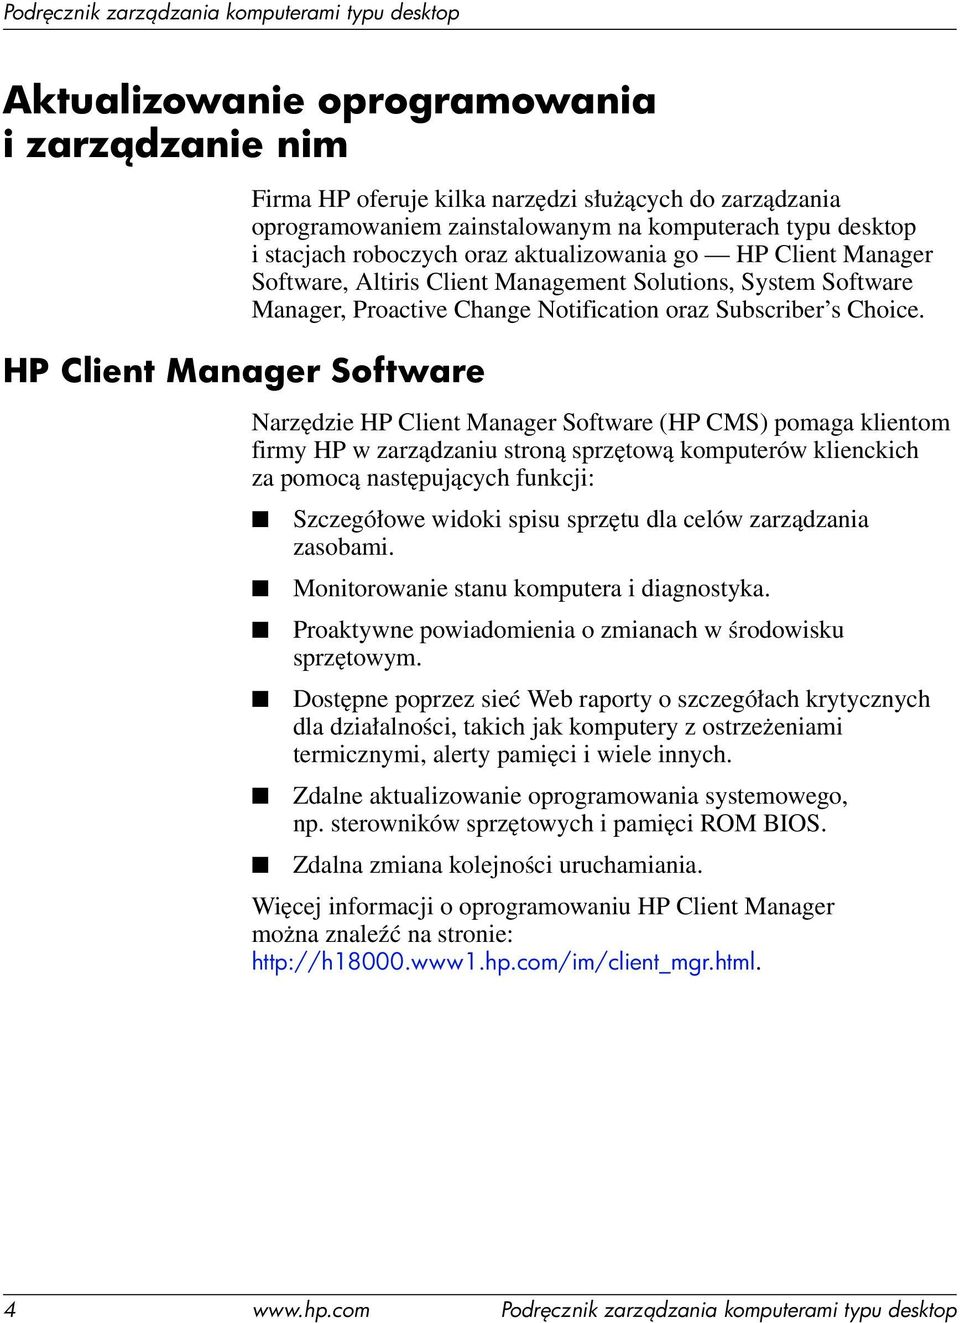 Narzędzie HP Client Manager Software (HP CMS) pomaga klientom firmy HP w zarządzaniu stroną sprzętową komputerów klienckich za pomocą następujących funkcji: Szczegółowe widoki spisu sprzętu dla celów